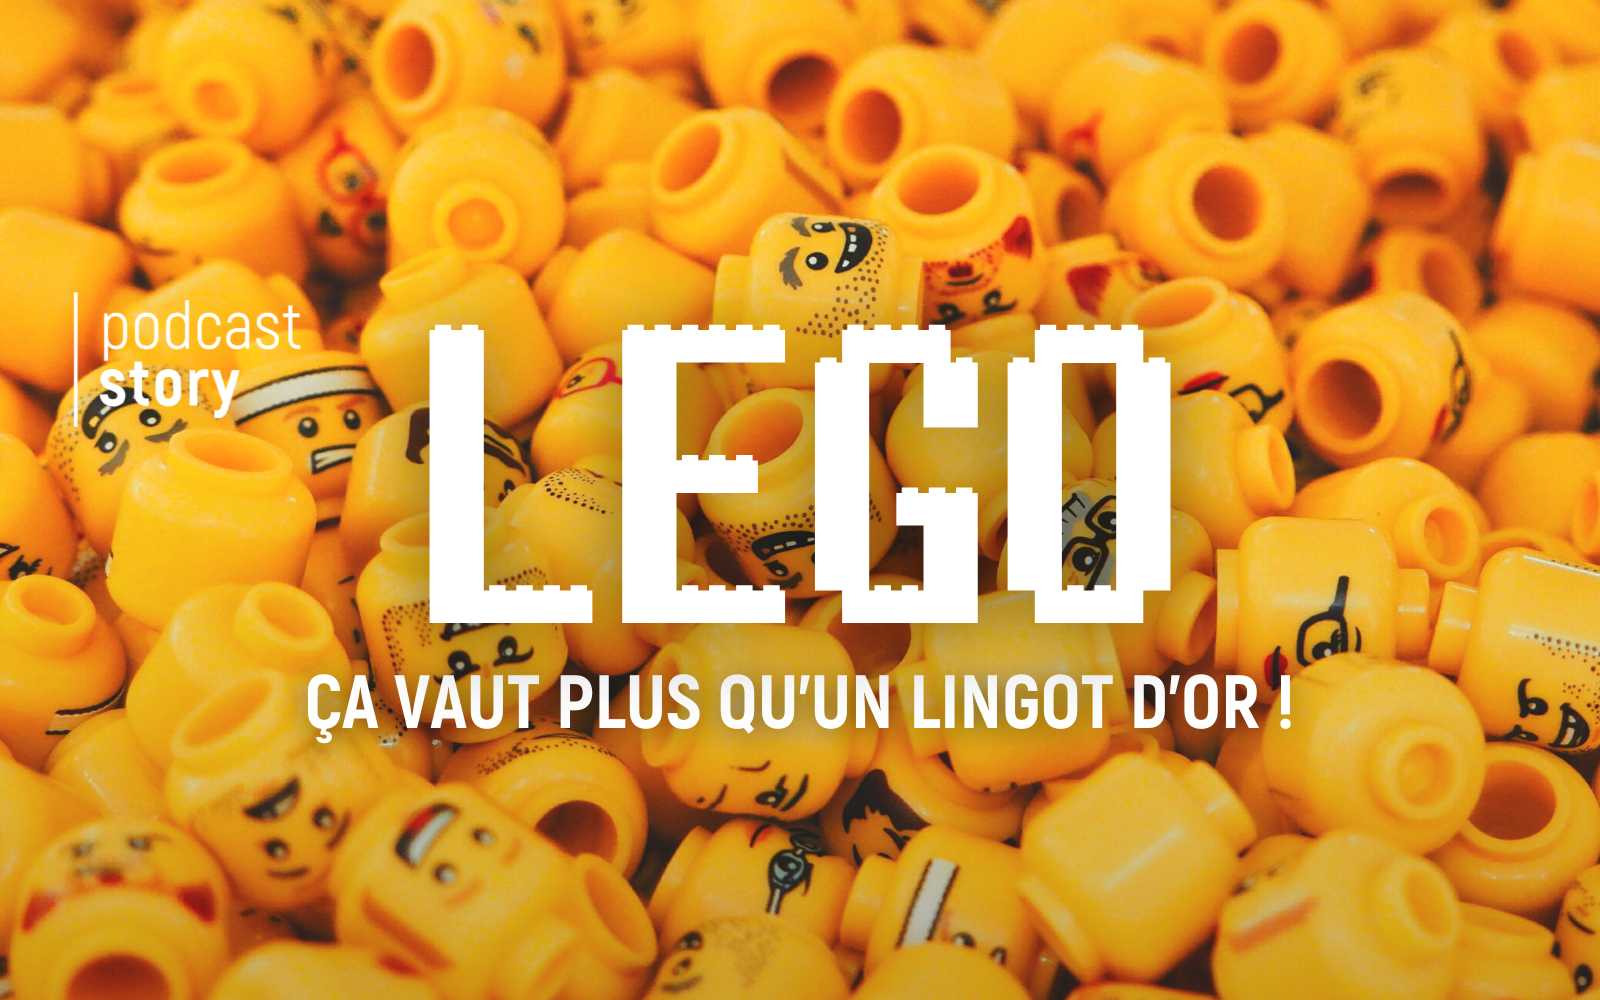 LEGO, Ça vaut plus qu’un lingot d’or !